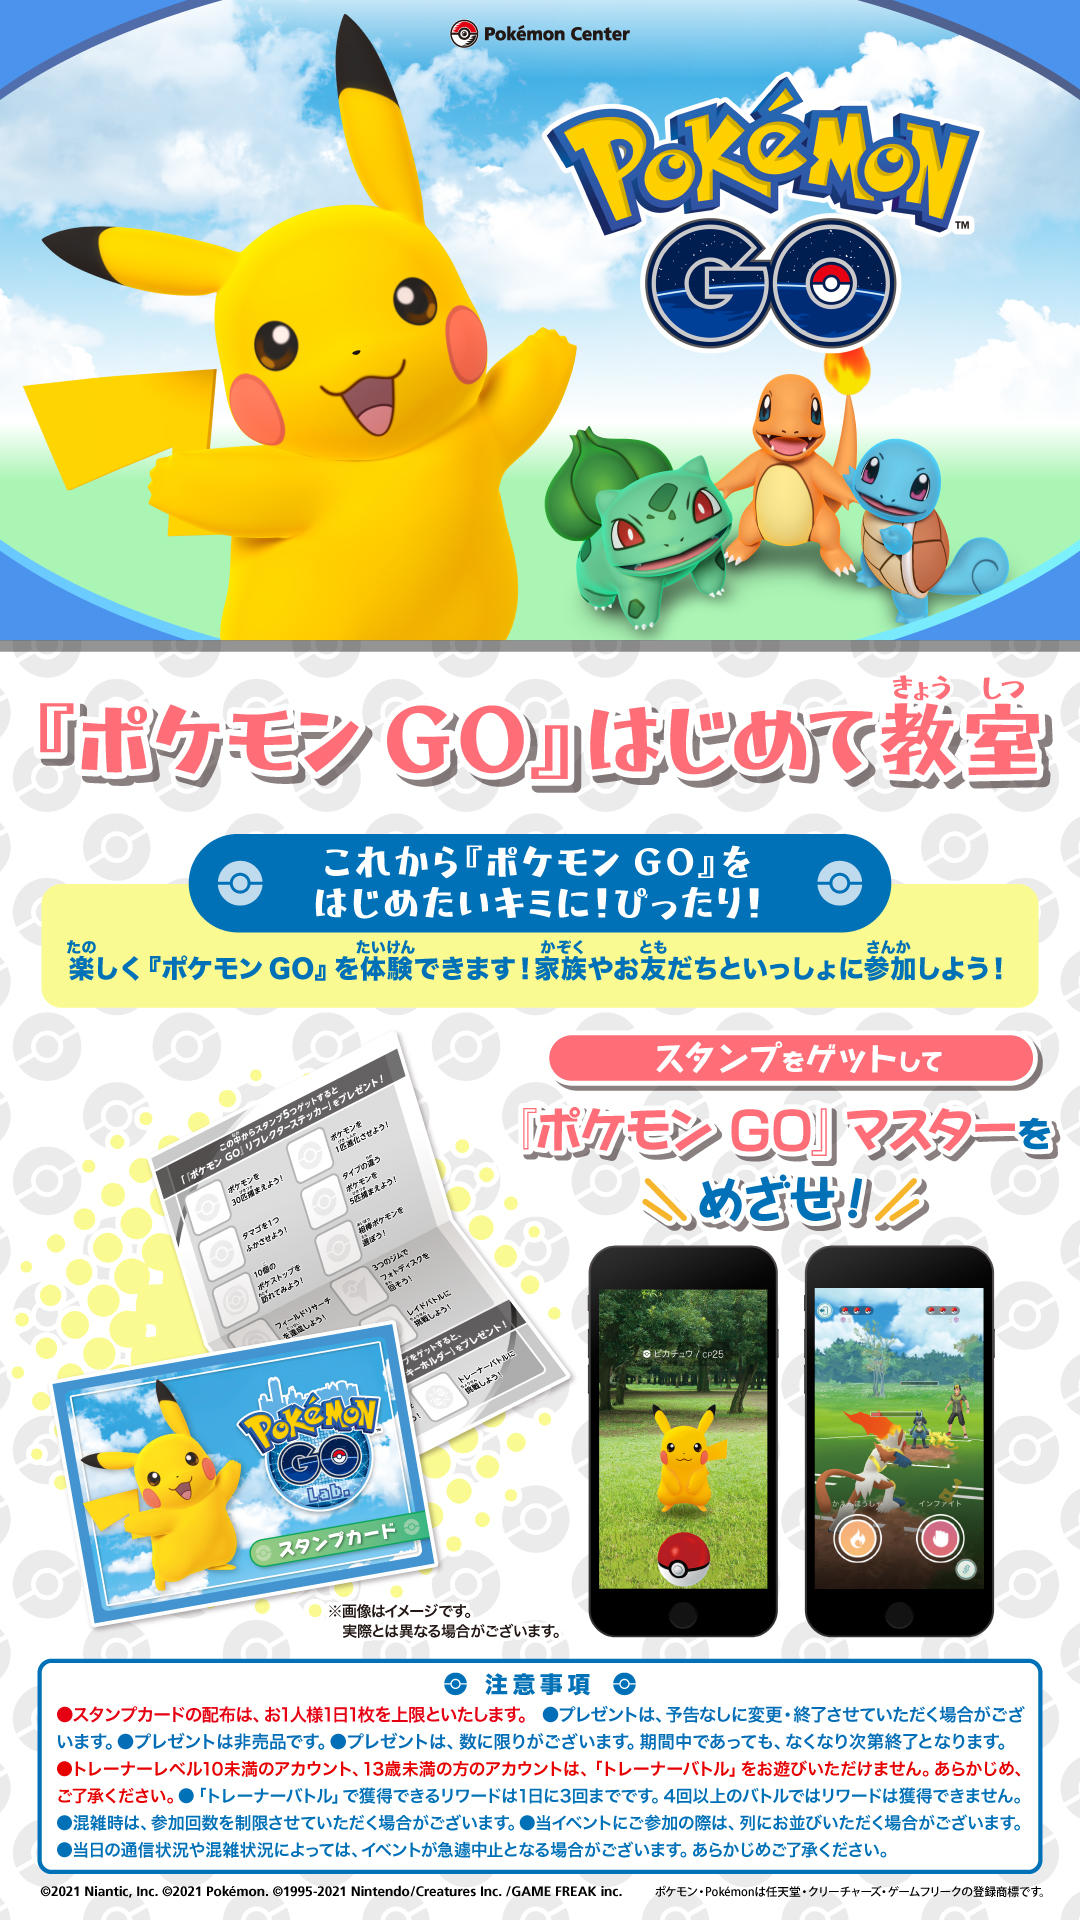 Pokemon_GOLab_DSposter_FTS.jpg